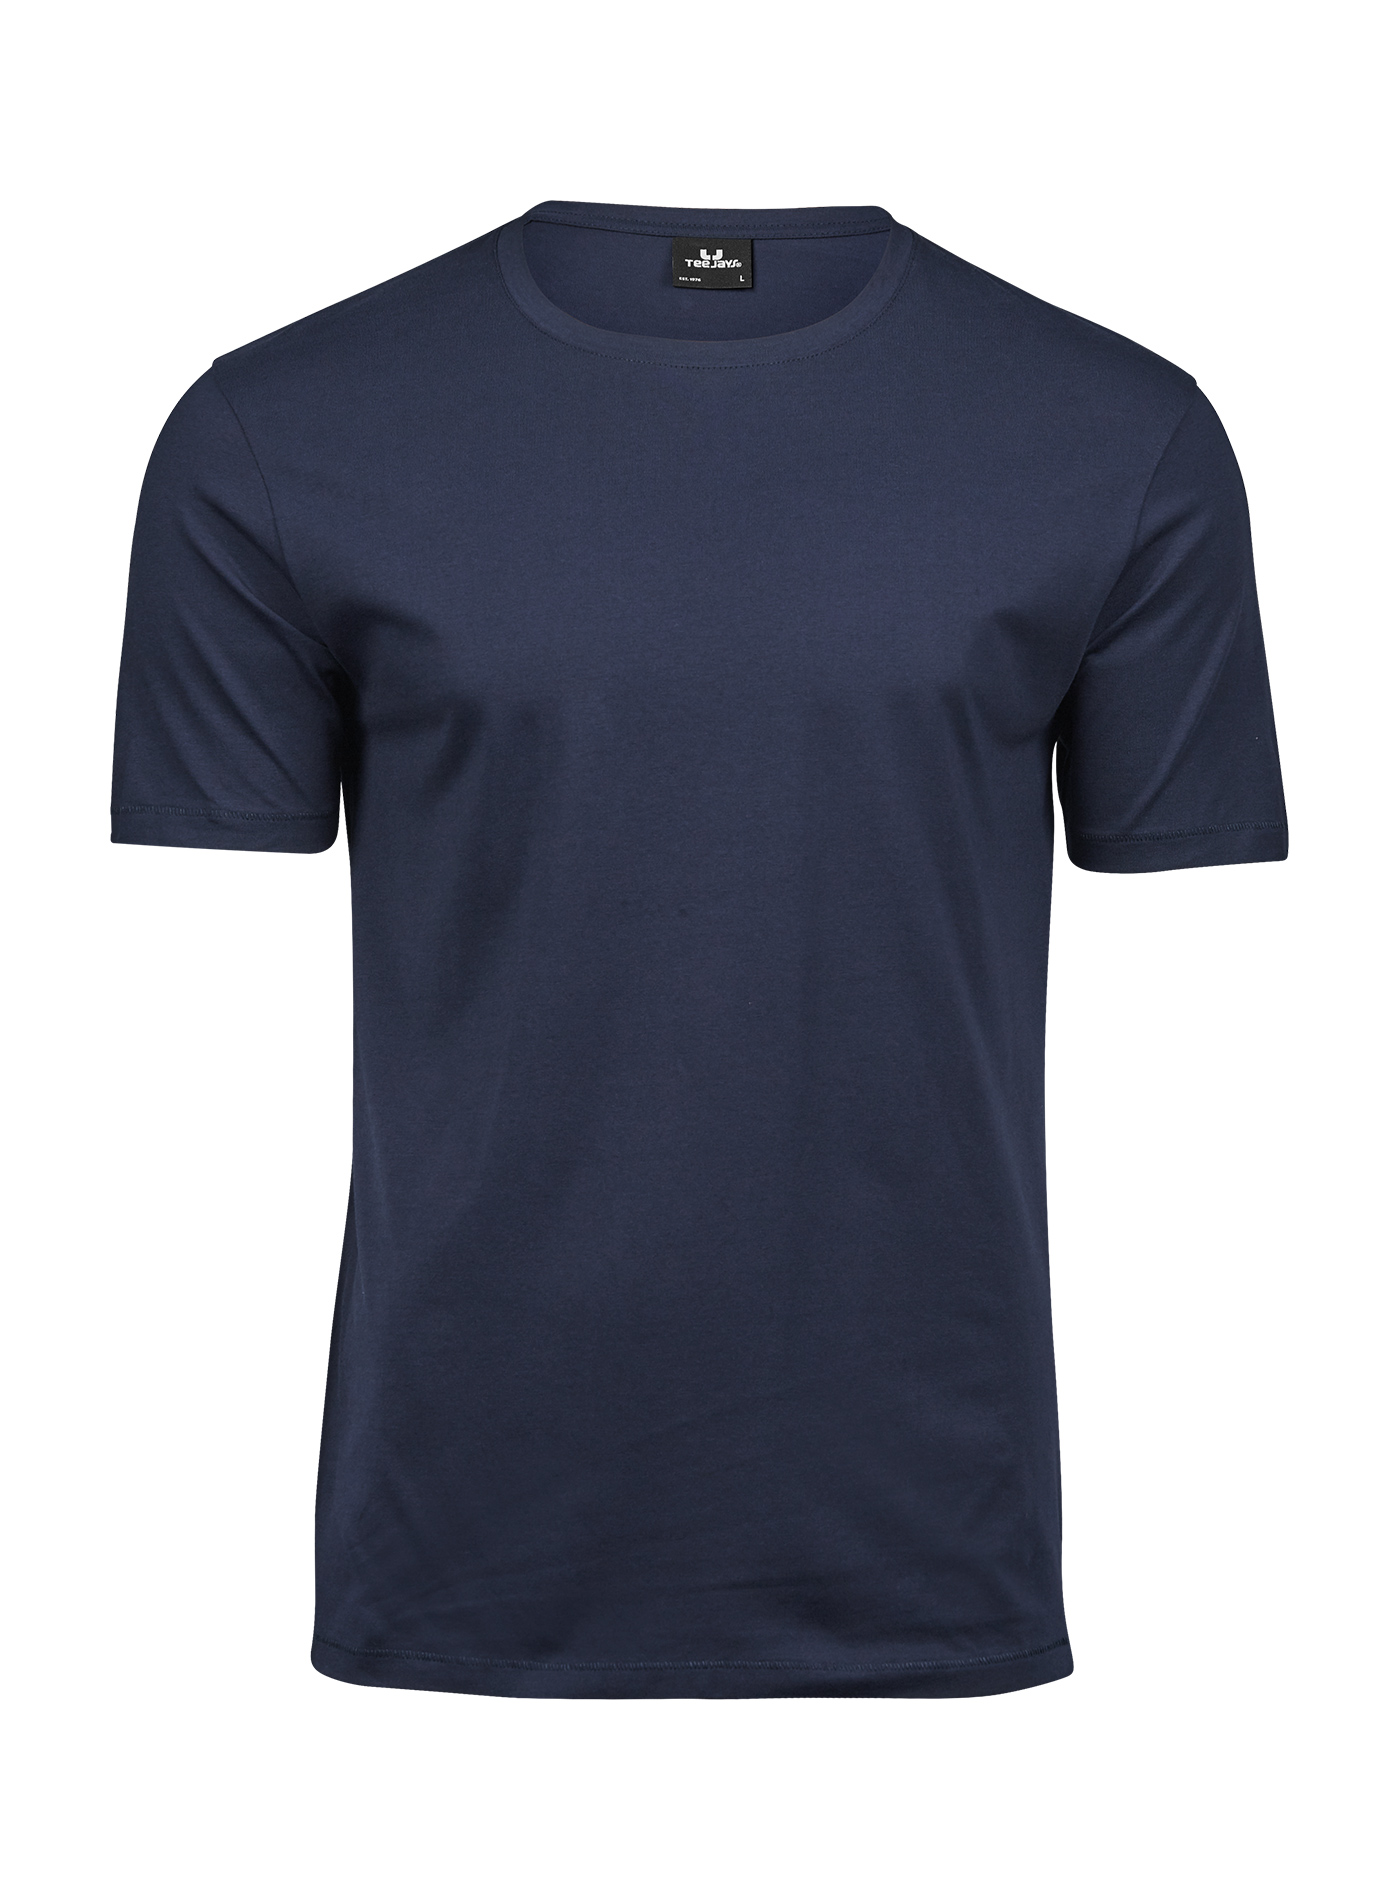 Pánské tričko Tee Jays Luxury - Cobalt blue/Navy XL